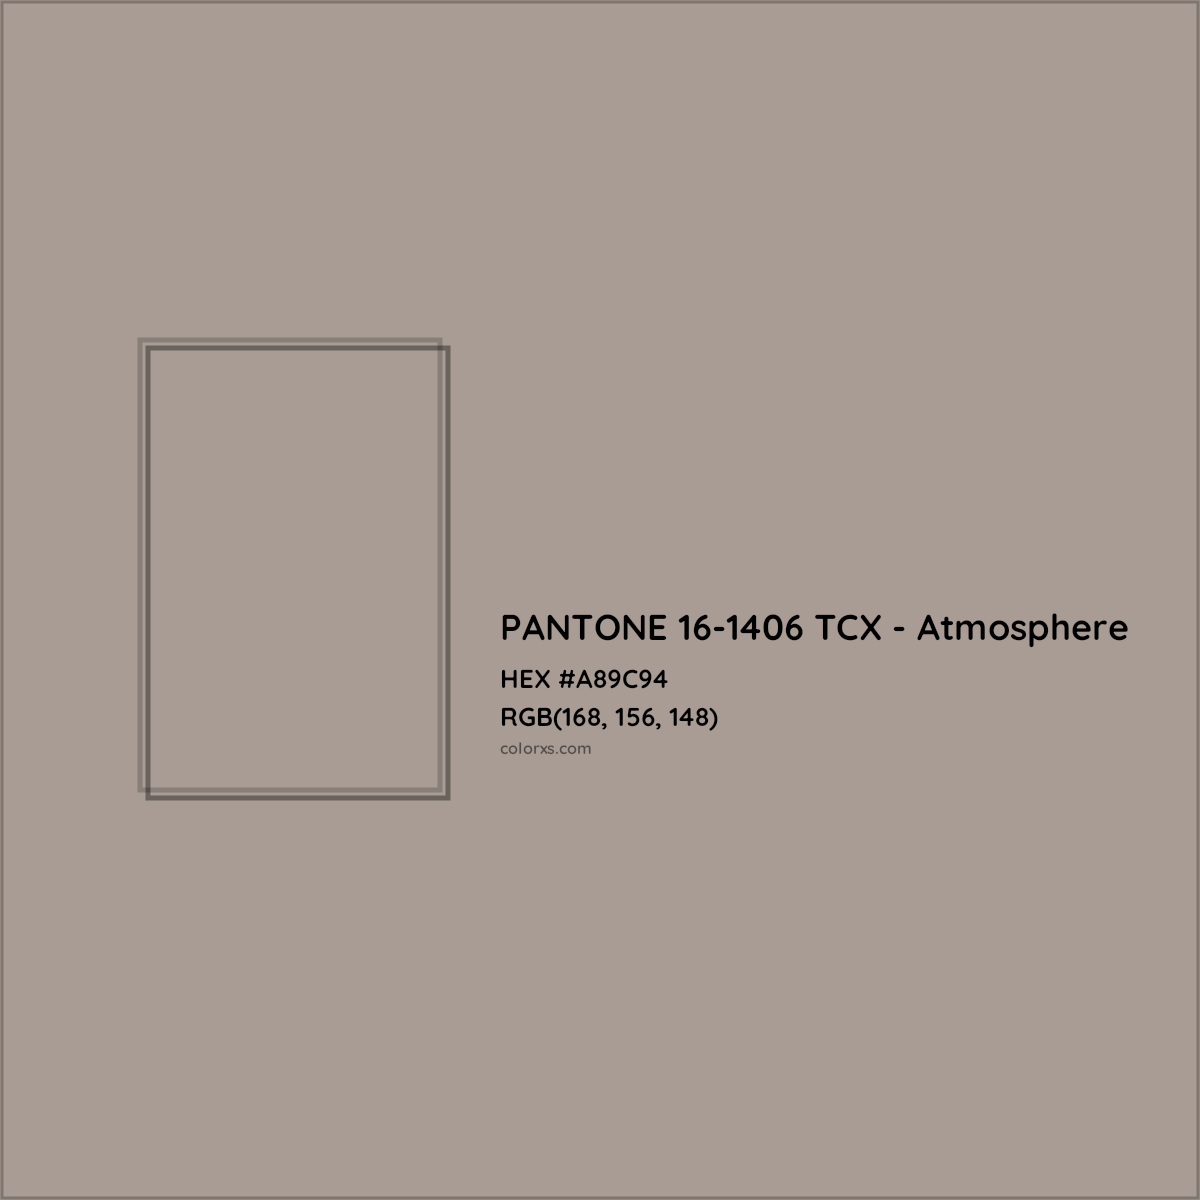 HEX #A89C94 PANTONE 16-1406 TCX - Atmosphere CMS Pantone TCX - Color Code